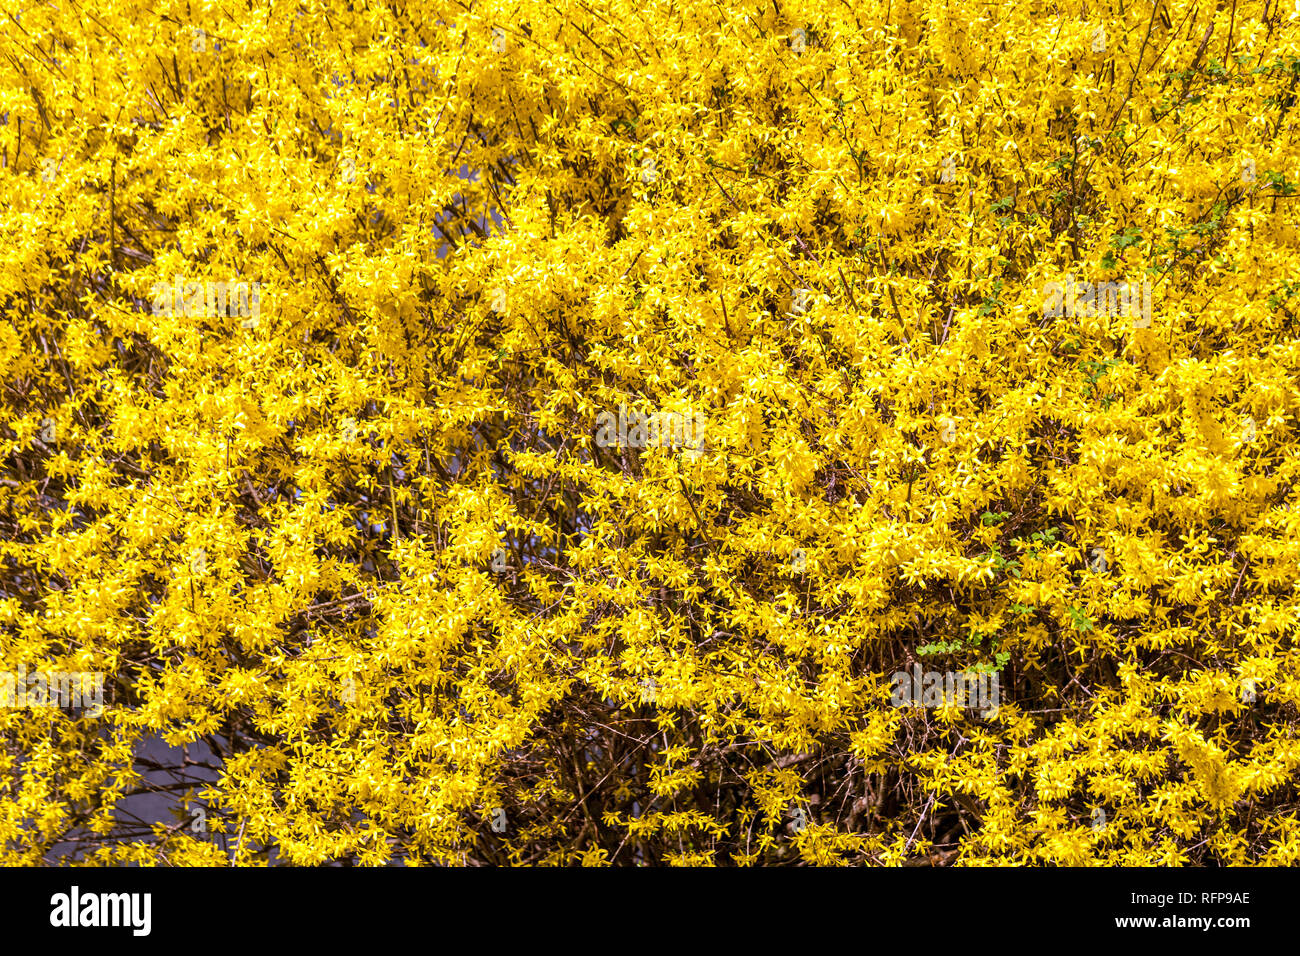 Forsythia x intermedia spring yellow blooming branches Forsythia bush Stock Photo